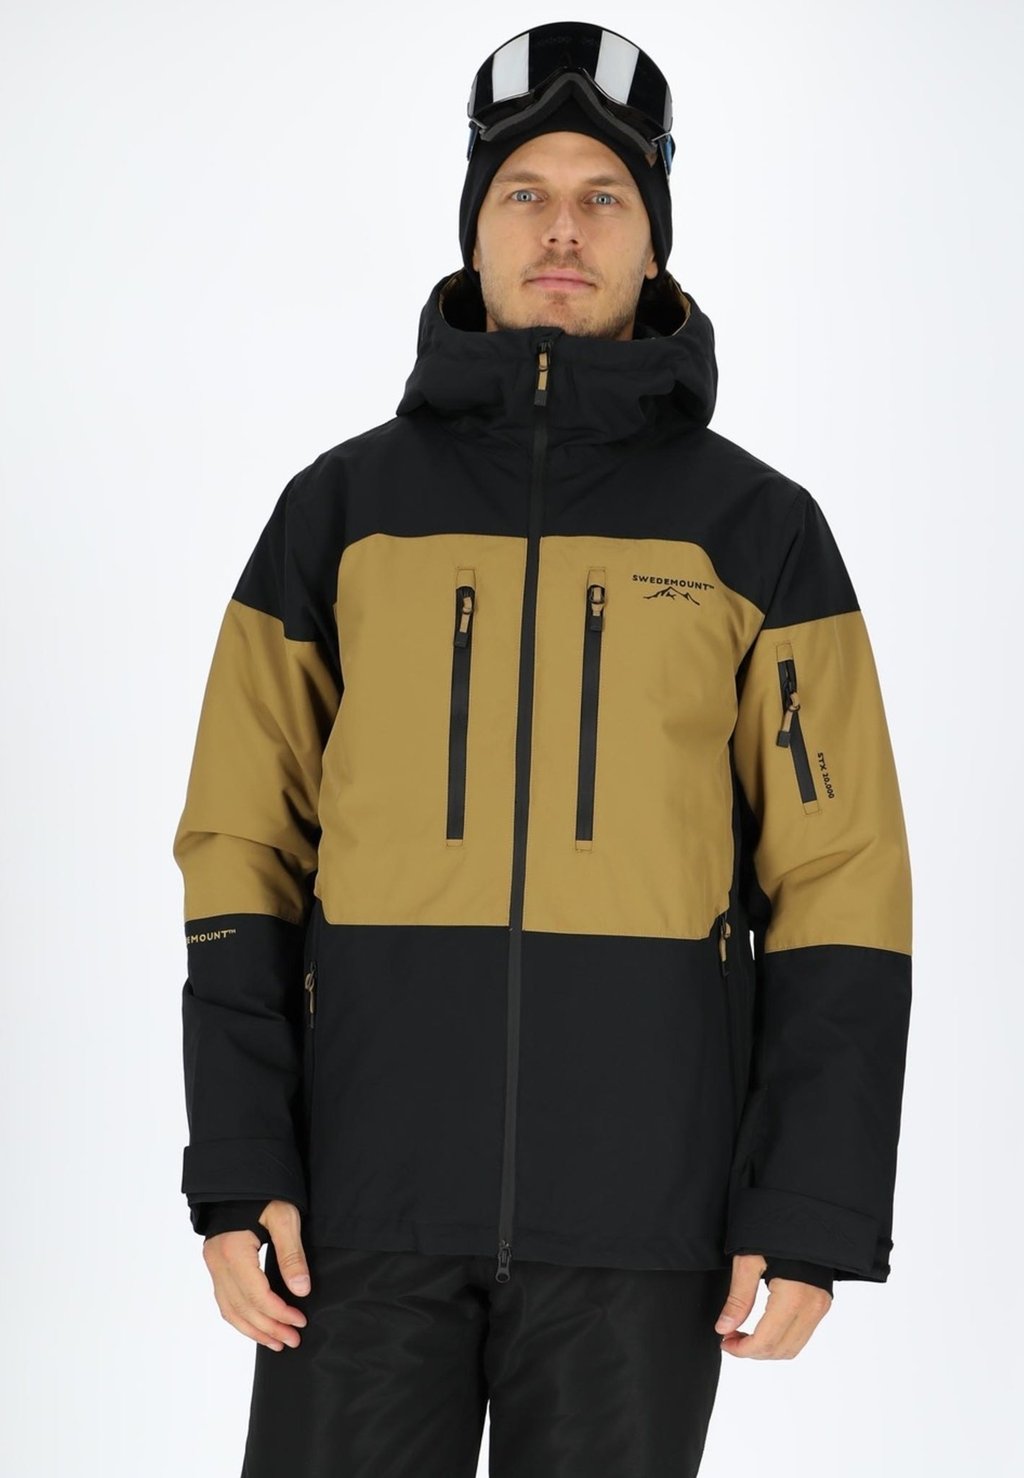 Лыжная куртка FREERIDE SHELL JACKET Swedemount, цвет sand black